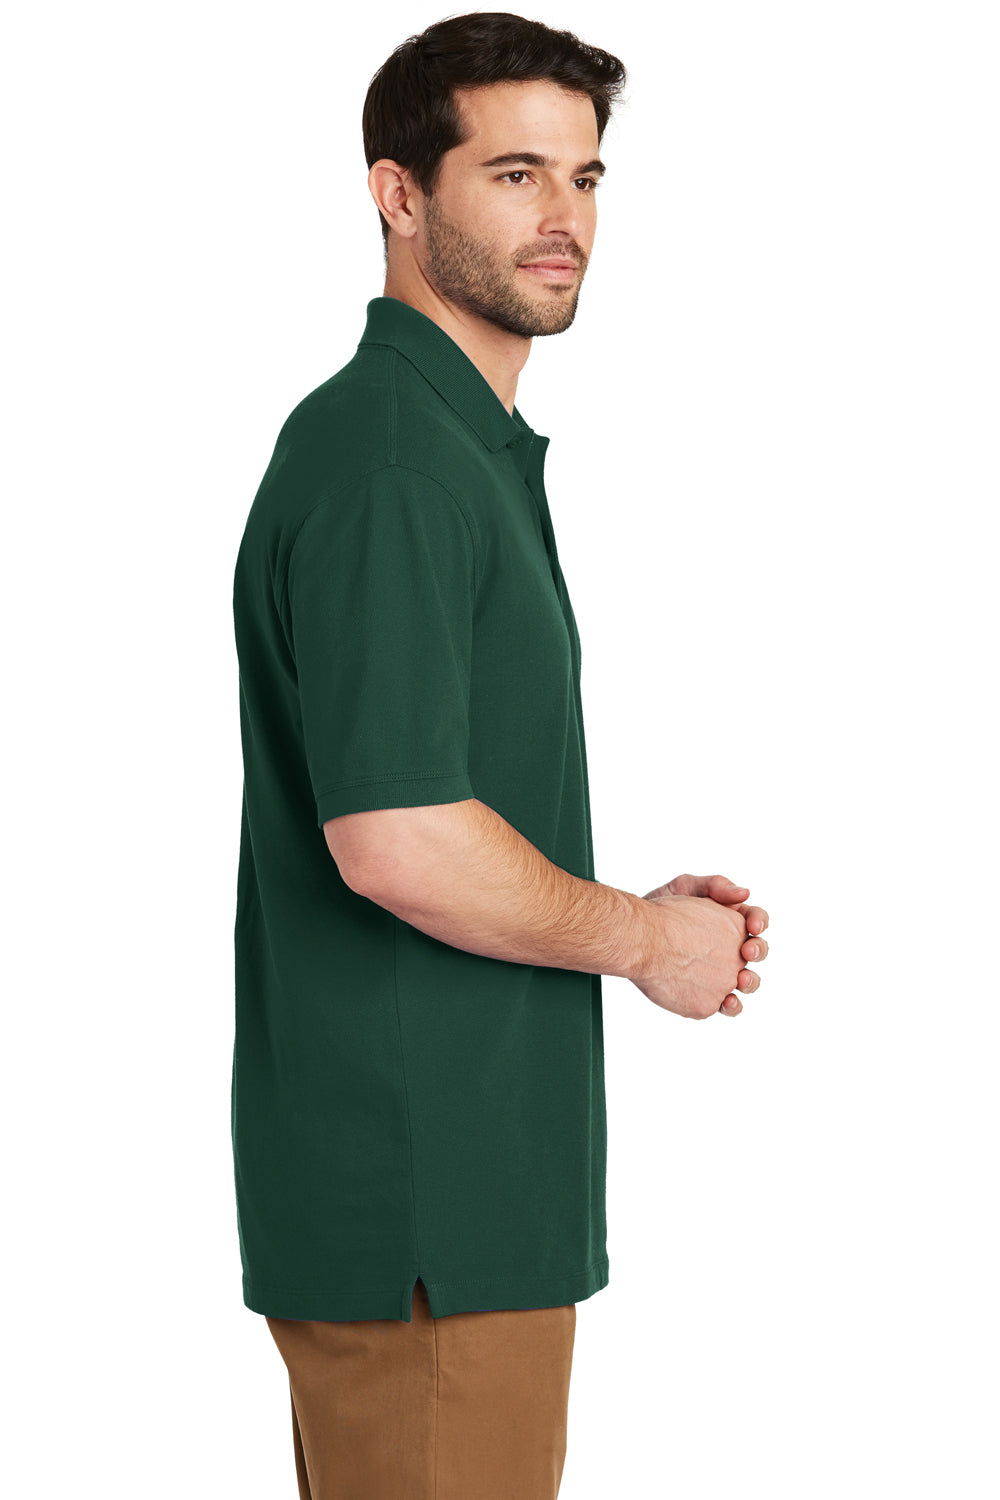 Port Authority K8000 Mens Wrinkle Resistant Short Sleeve Polo Shirt Glen Green Side